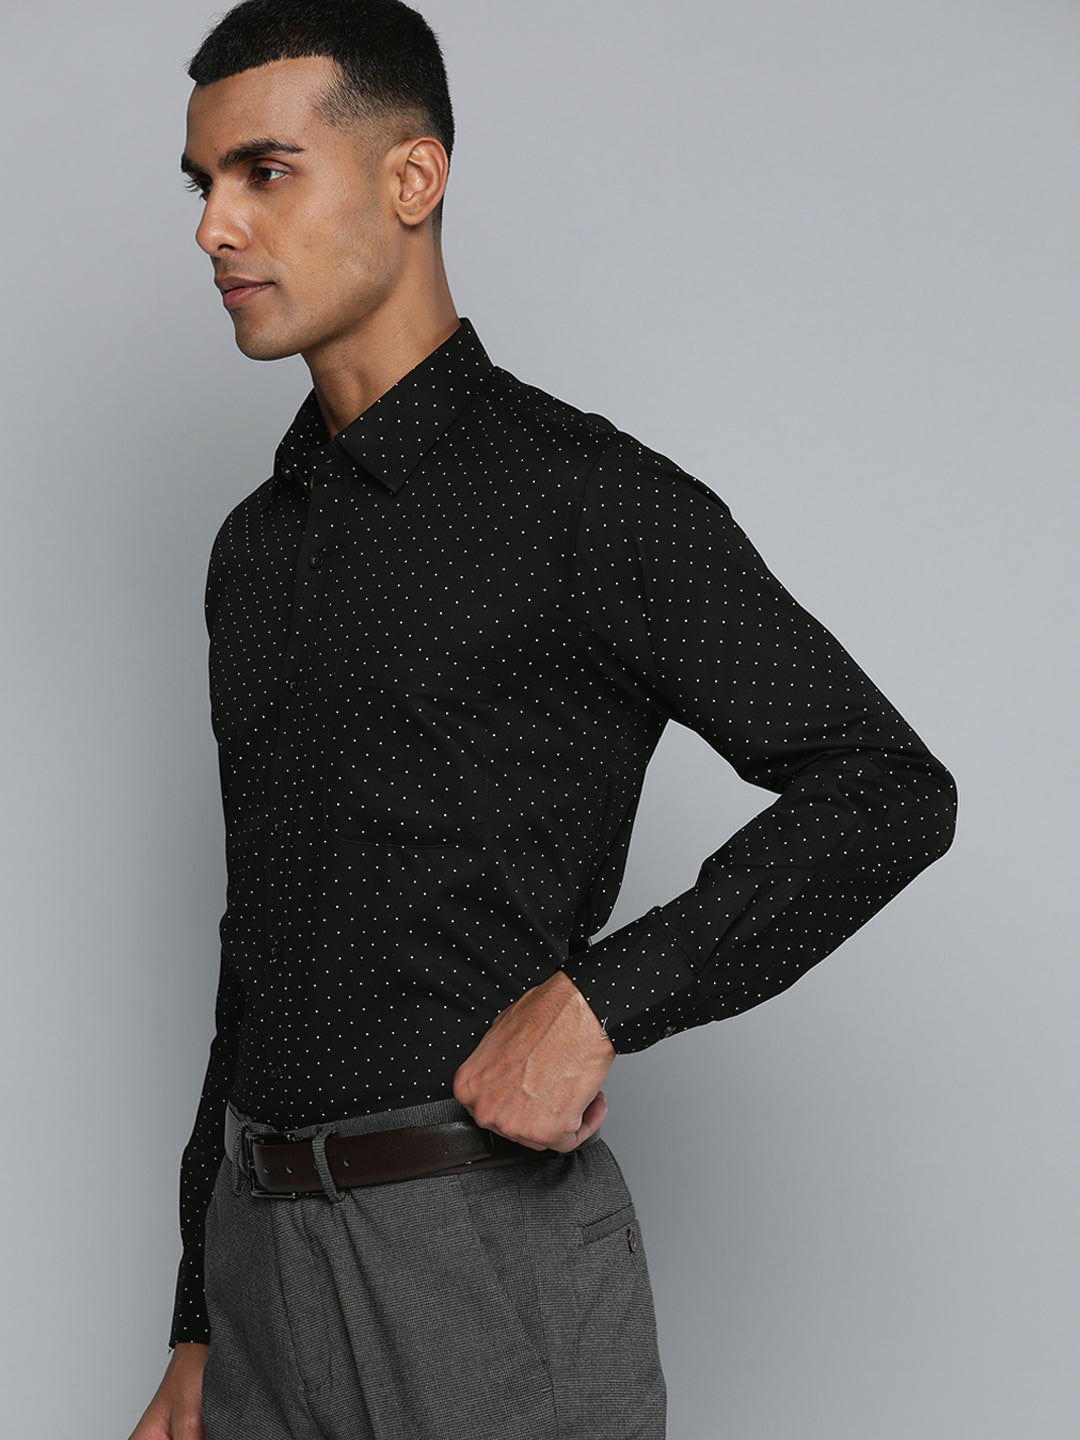 DENNISON Men Black Smart Polka Dots Printed Formal Shirt